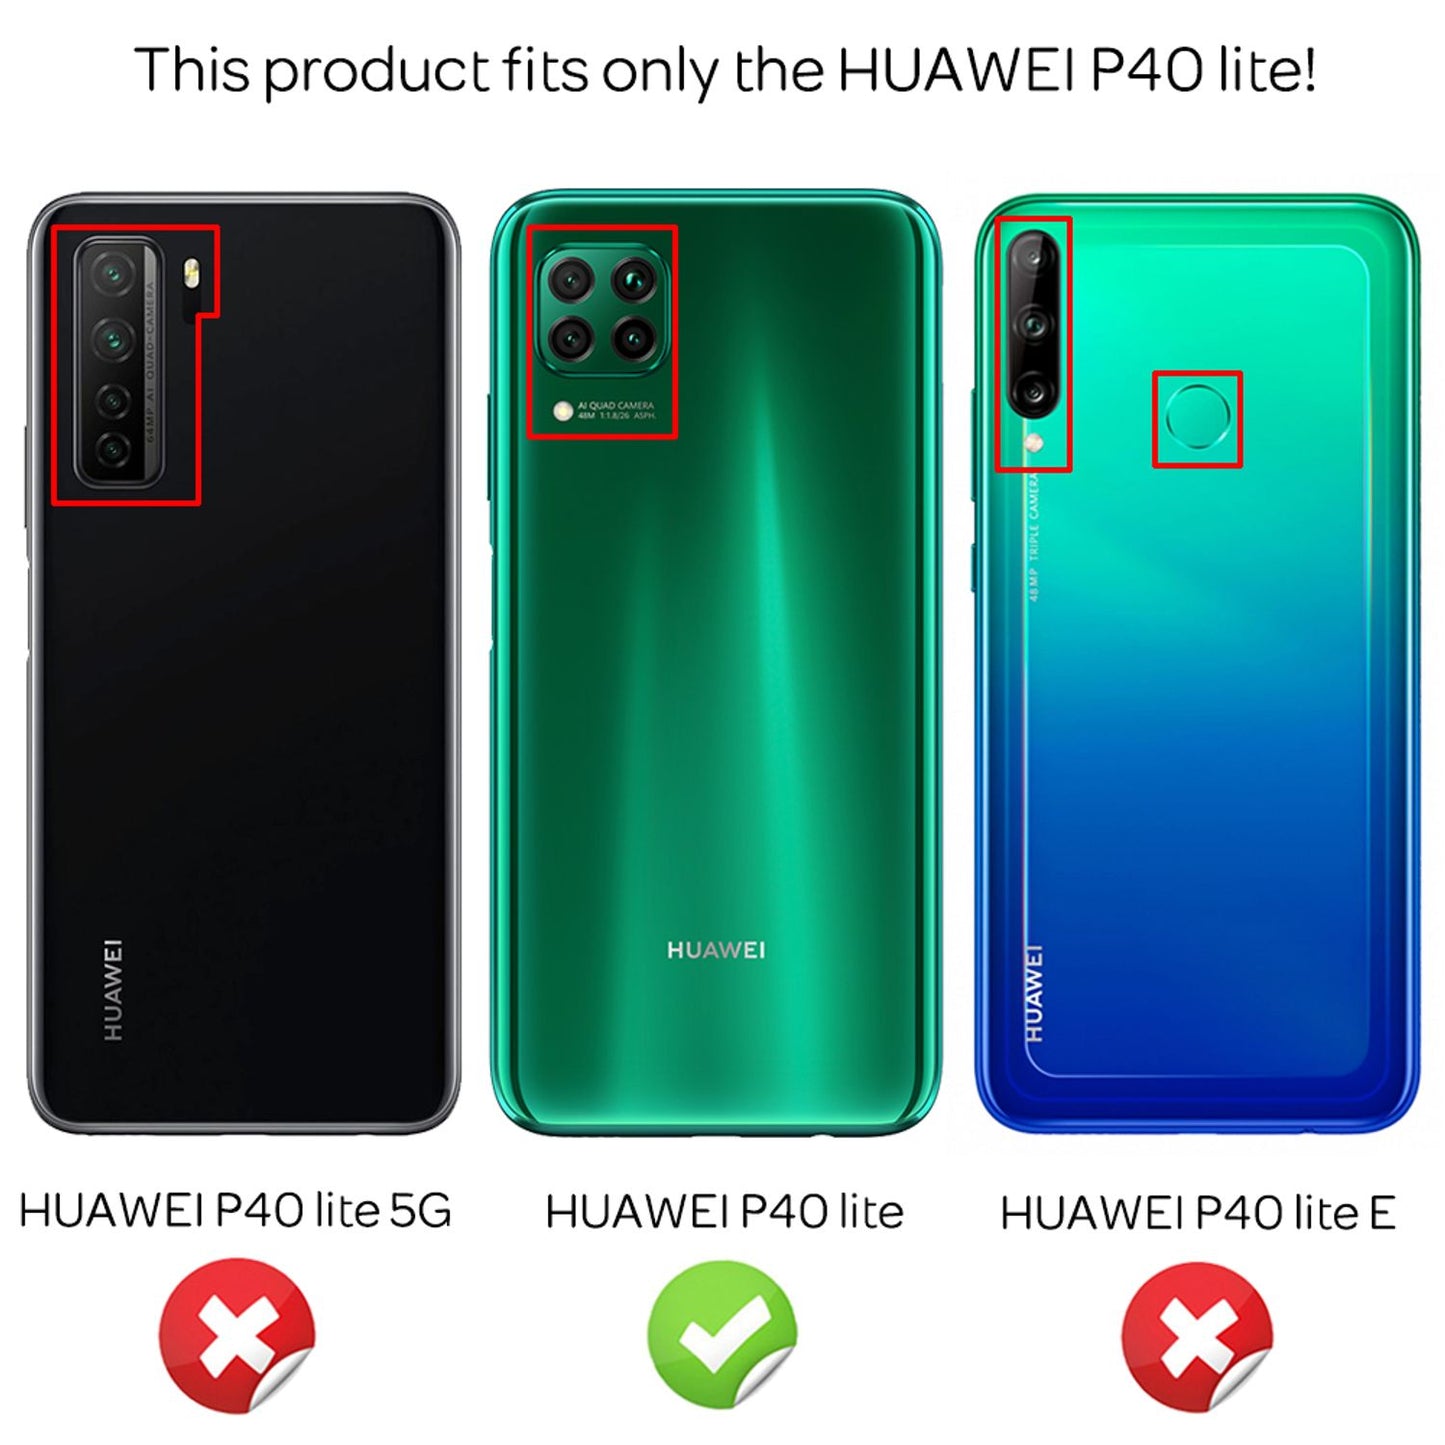 NALIA Handy Hülle für Huawei P40 Lite, Slim Case Schutz Cover Tasche Bumper Etui